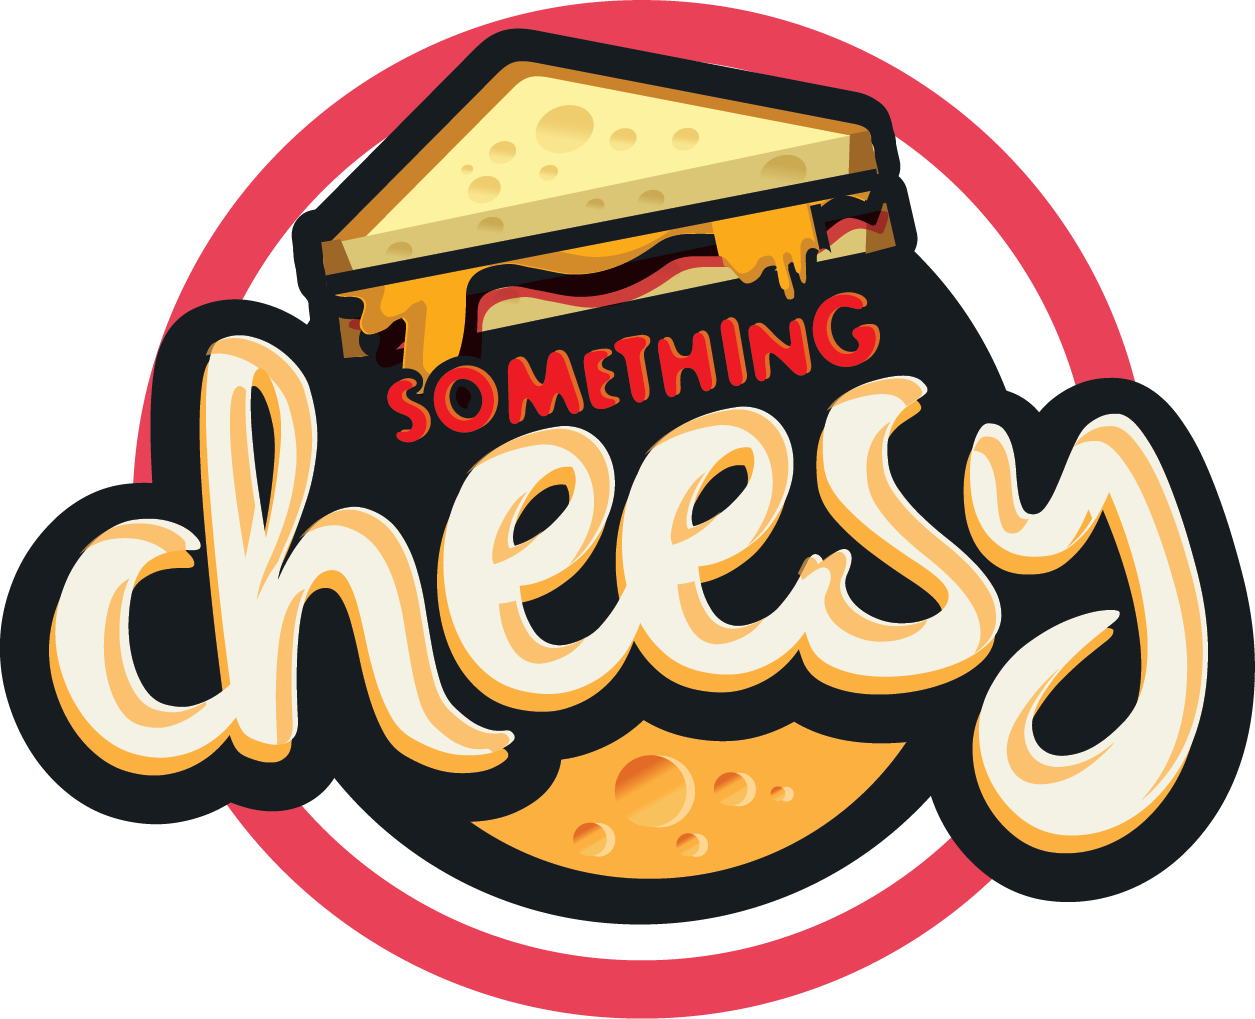 Something Cheesy